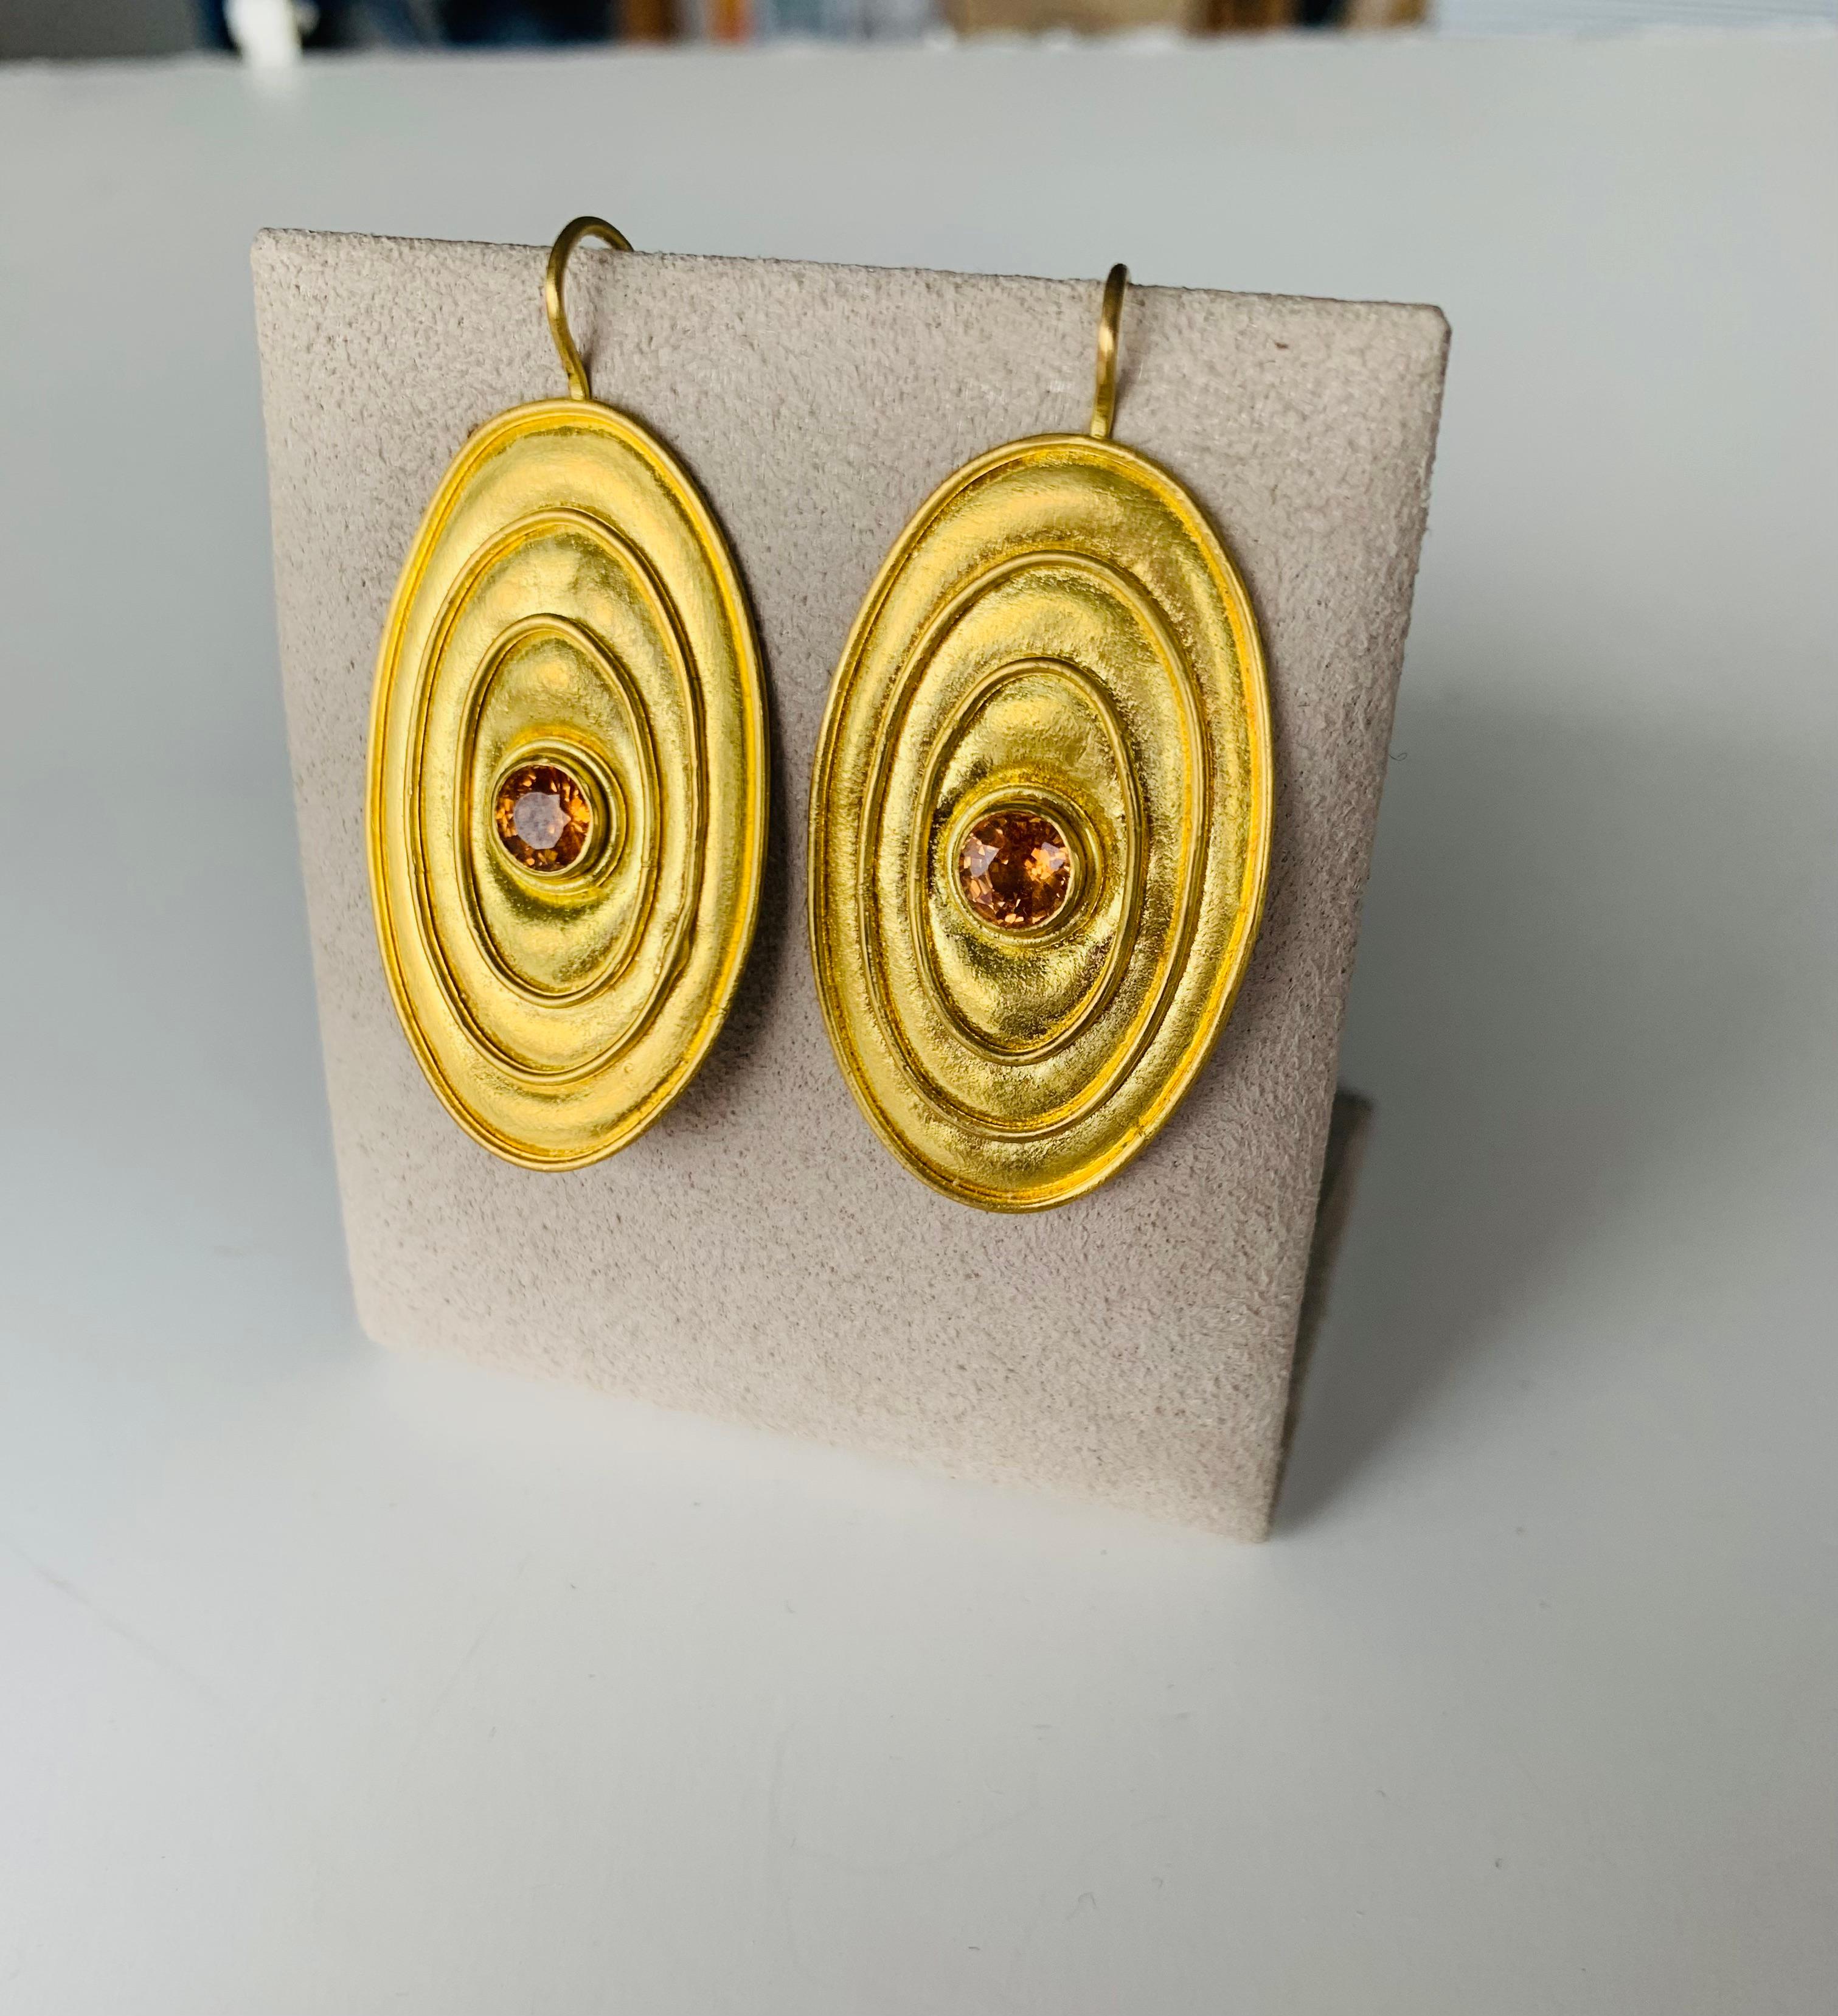 Celestial Mandarin Garnet earrings  with 